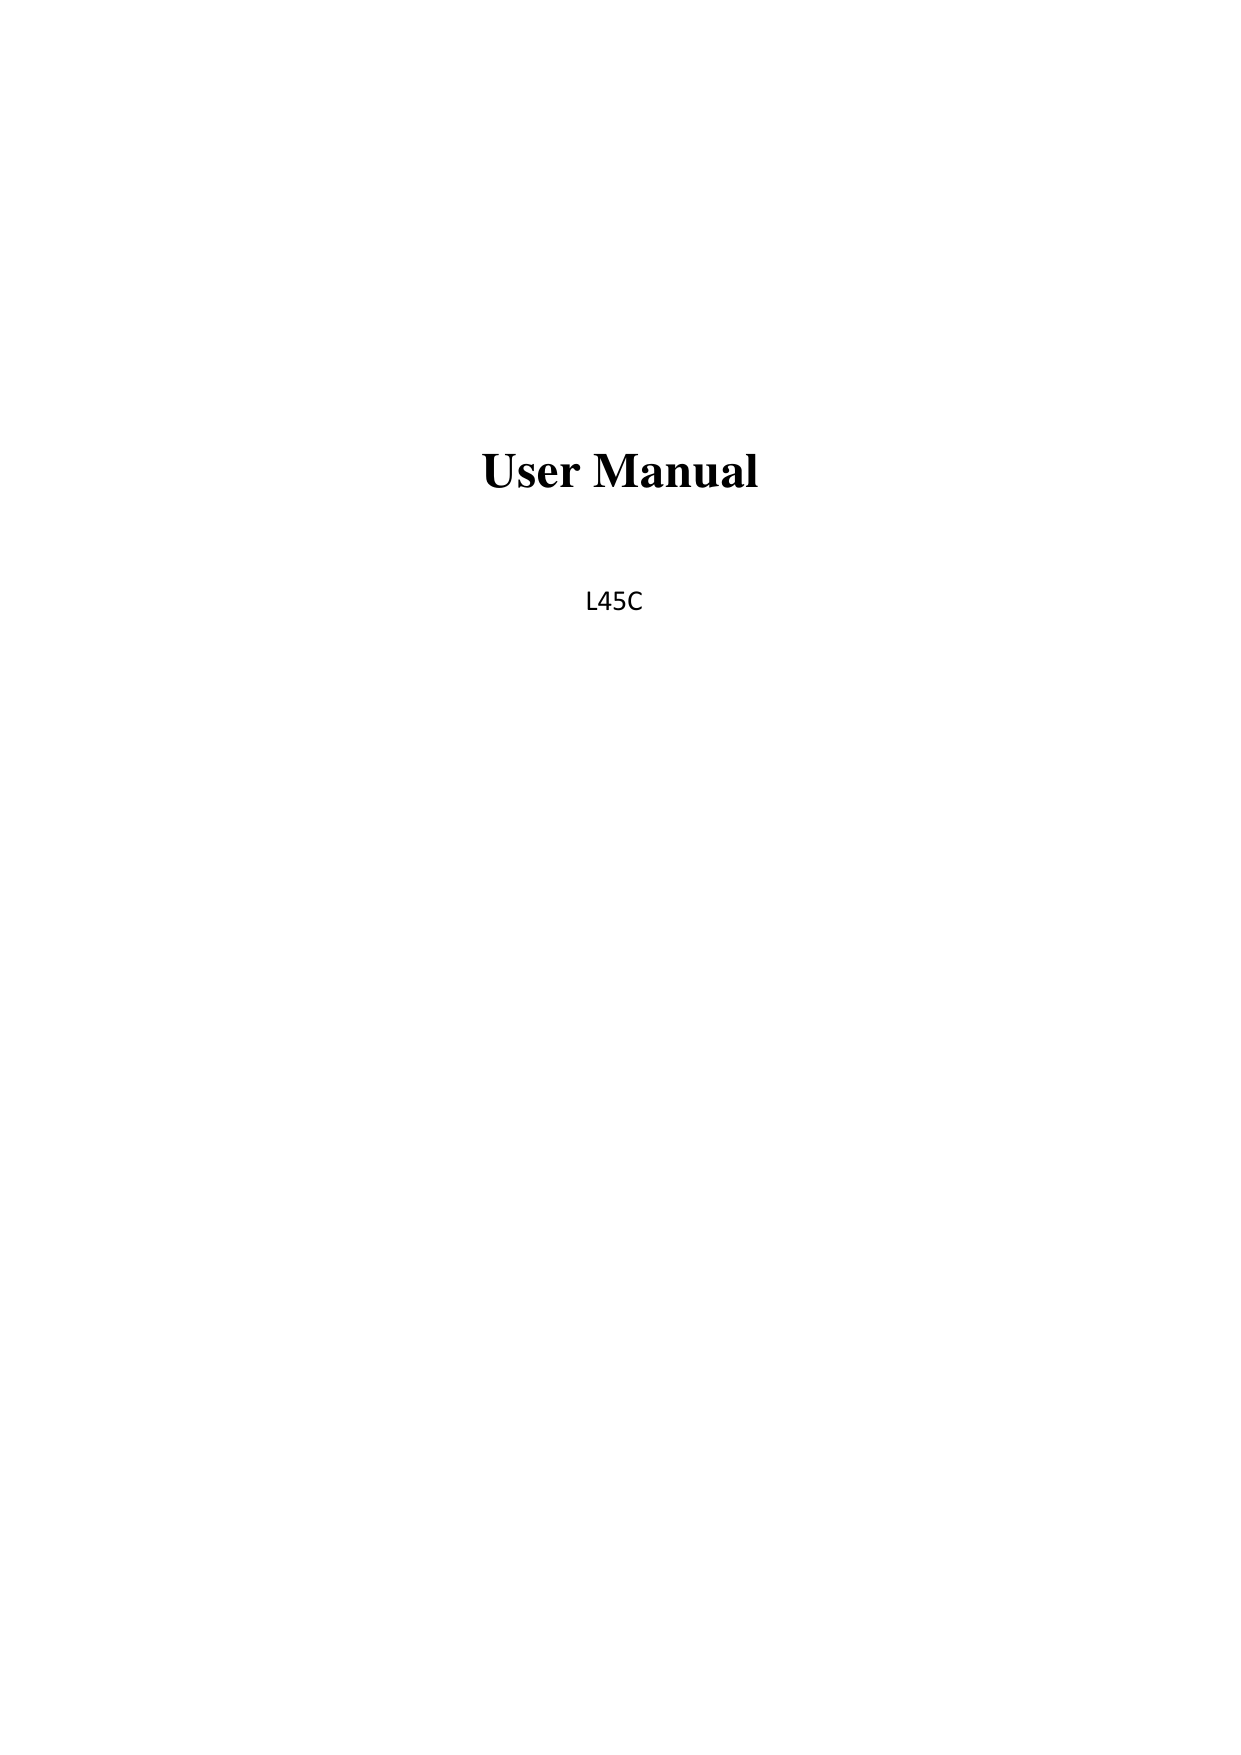     User Manual  L45C                     